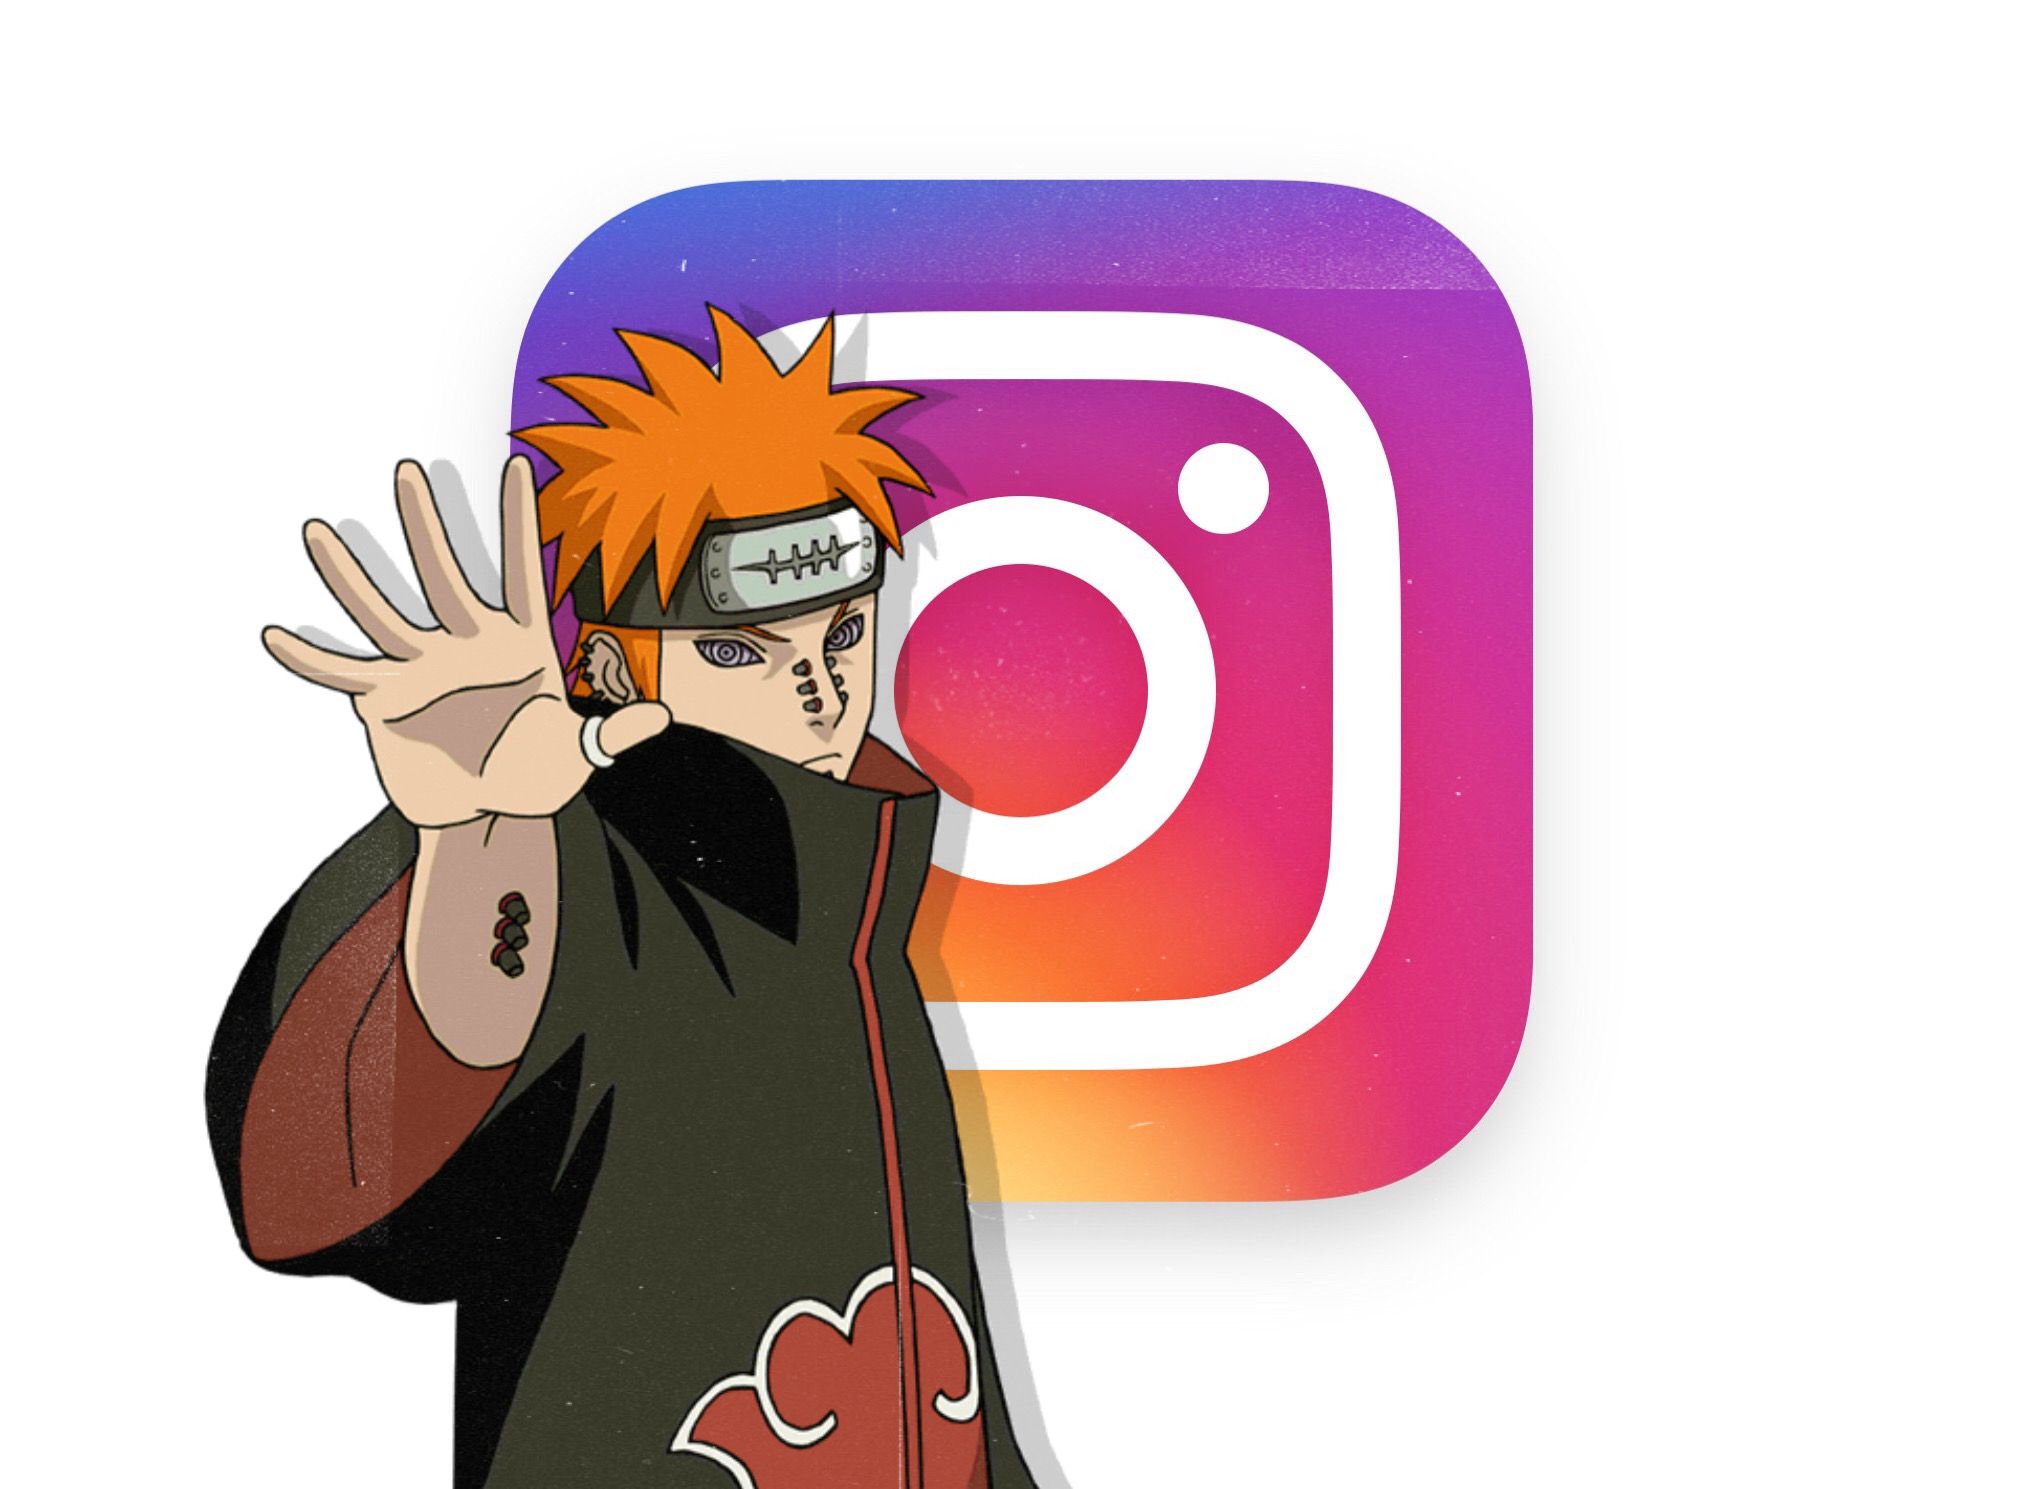 Anime App Icons❤ on Instagram: “#animeappicons #animeappicon #animeapp # anime #app” | Anime snapchat, Anime, App anime